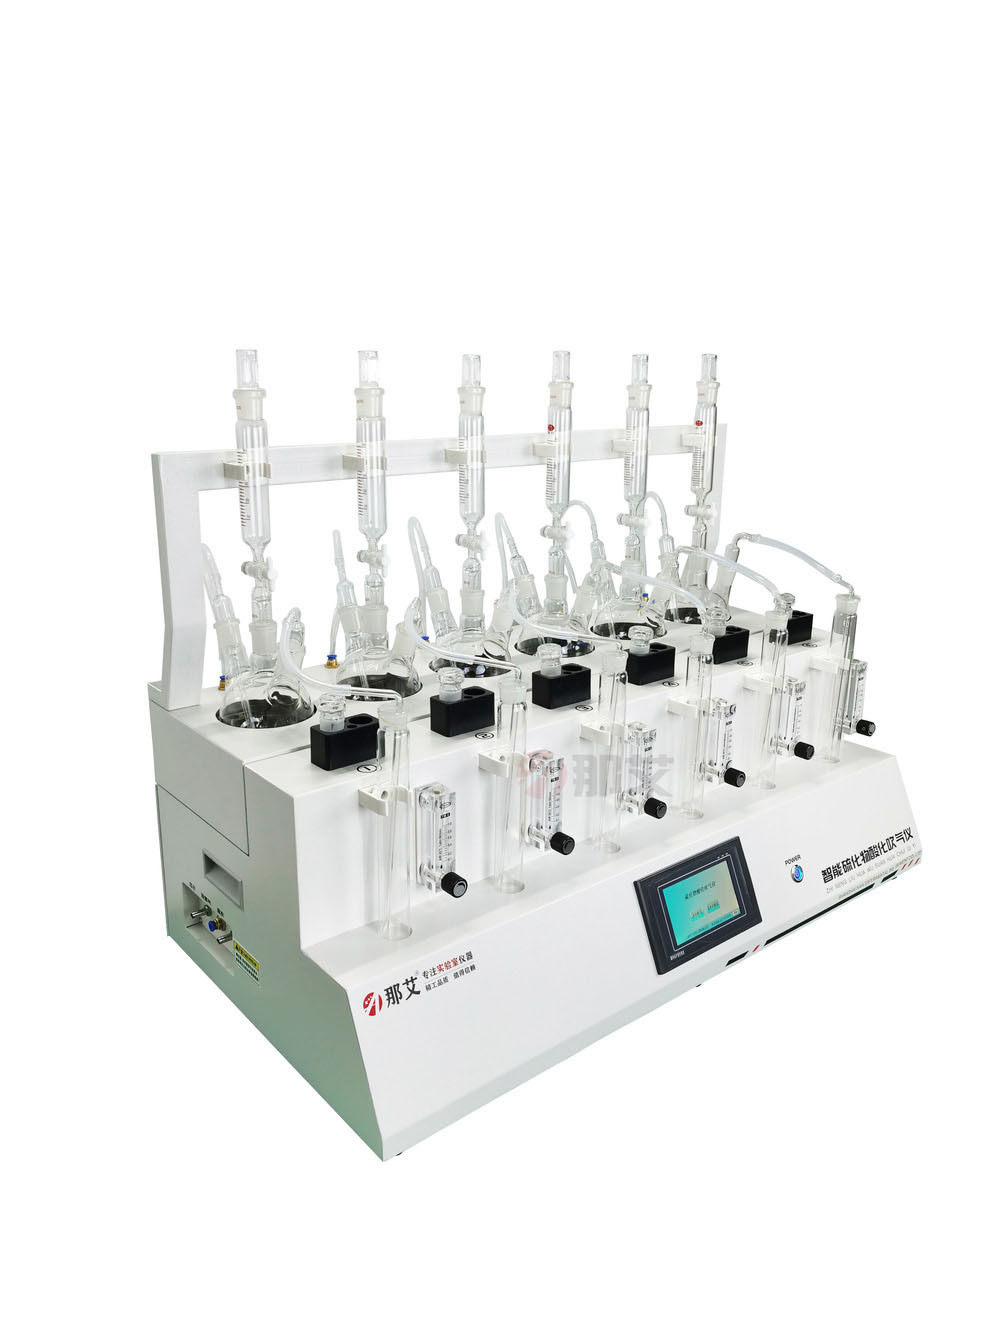 硫化物酸化吹气吸收装置,用于检测水中硫化物的前处理仪器,自动水位控制